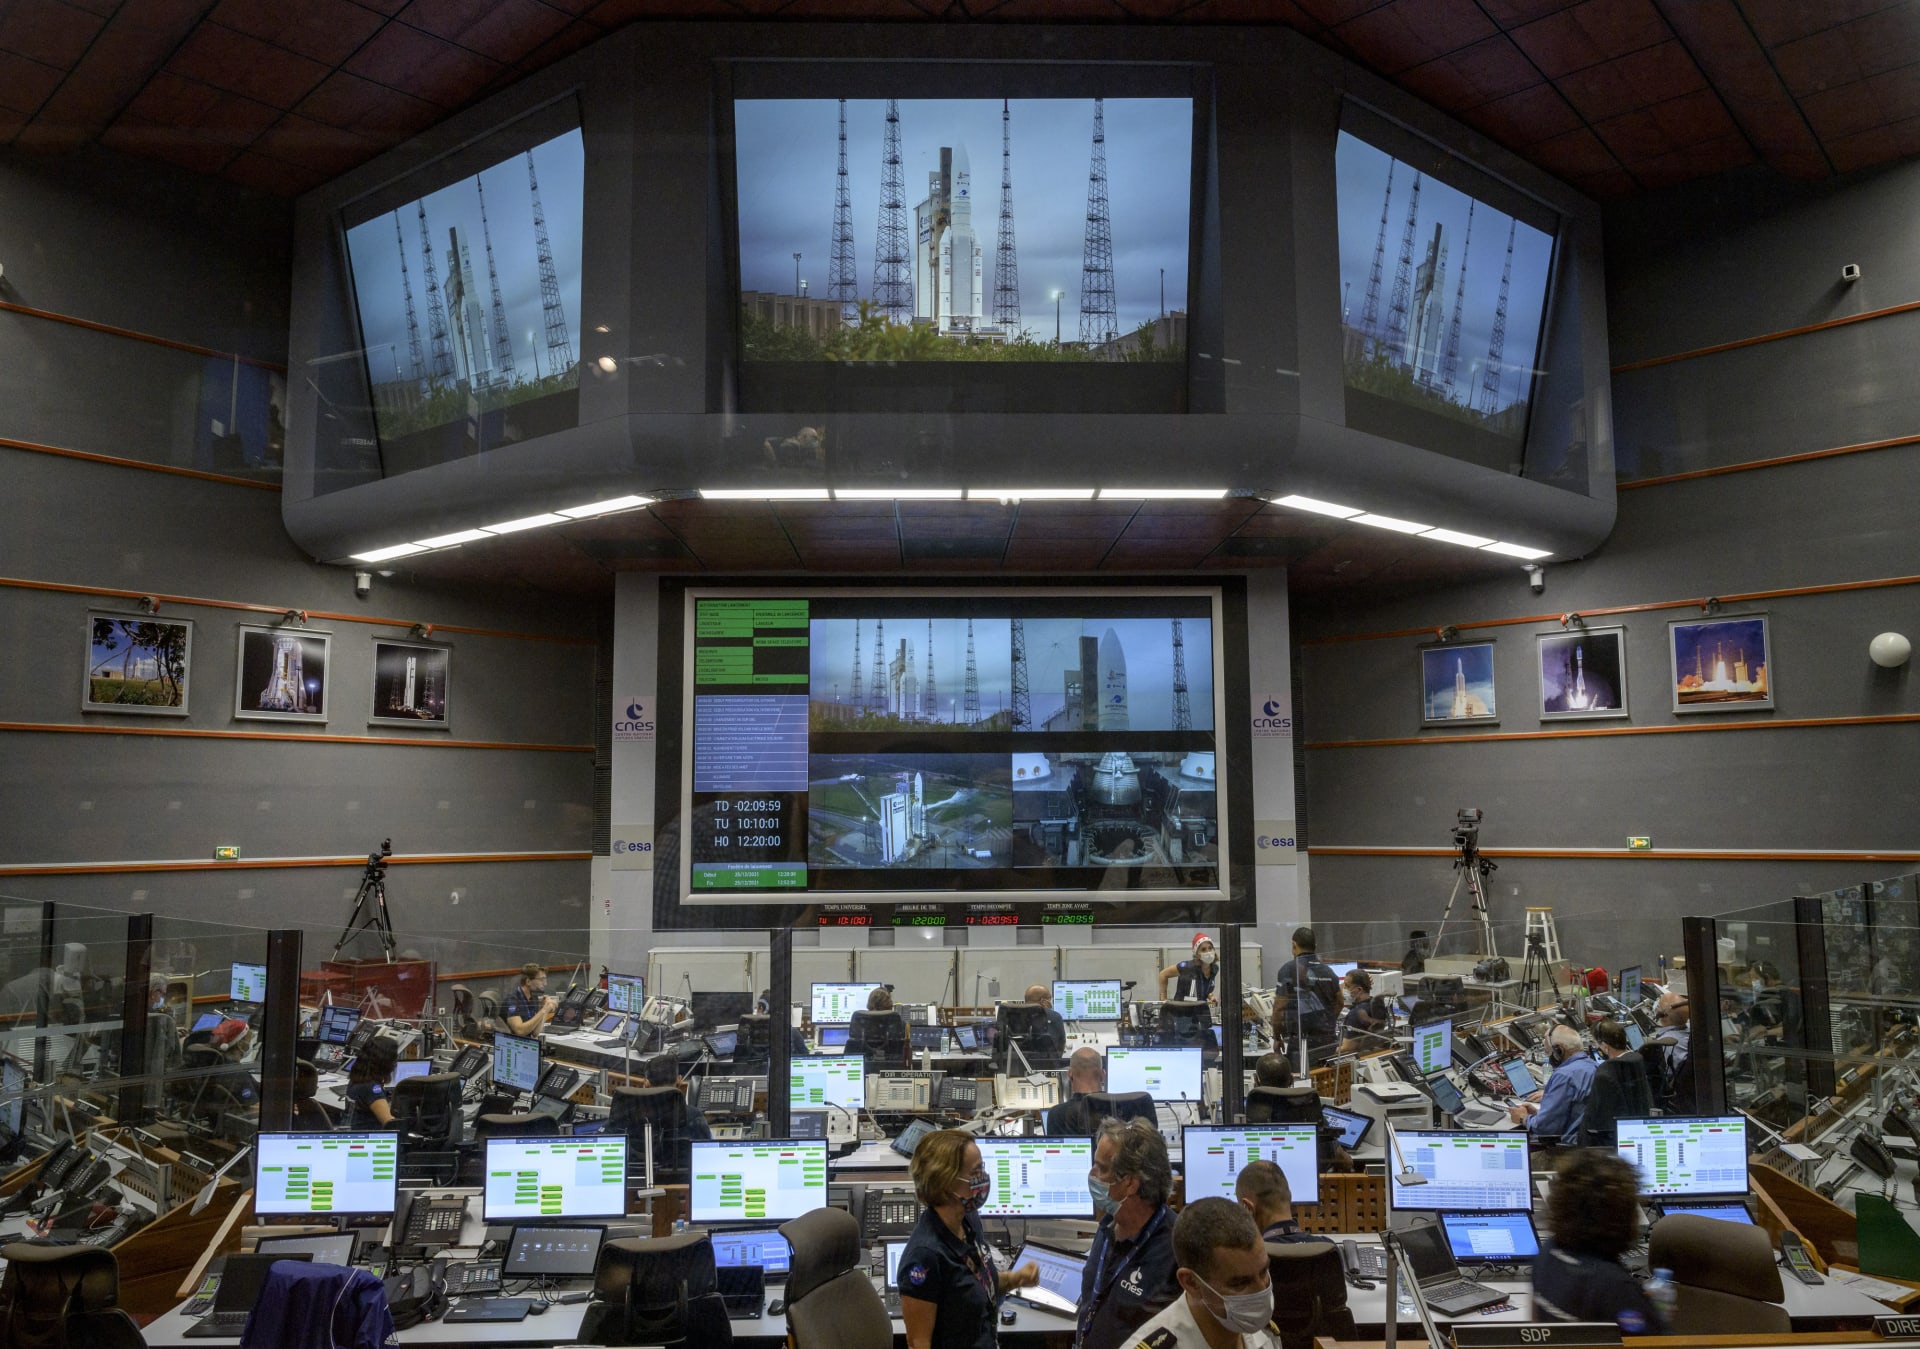 Celá řídící místnost NASA s napětím sledovala, jak dopadne start rakety Ariane 5.